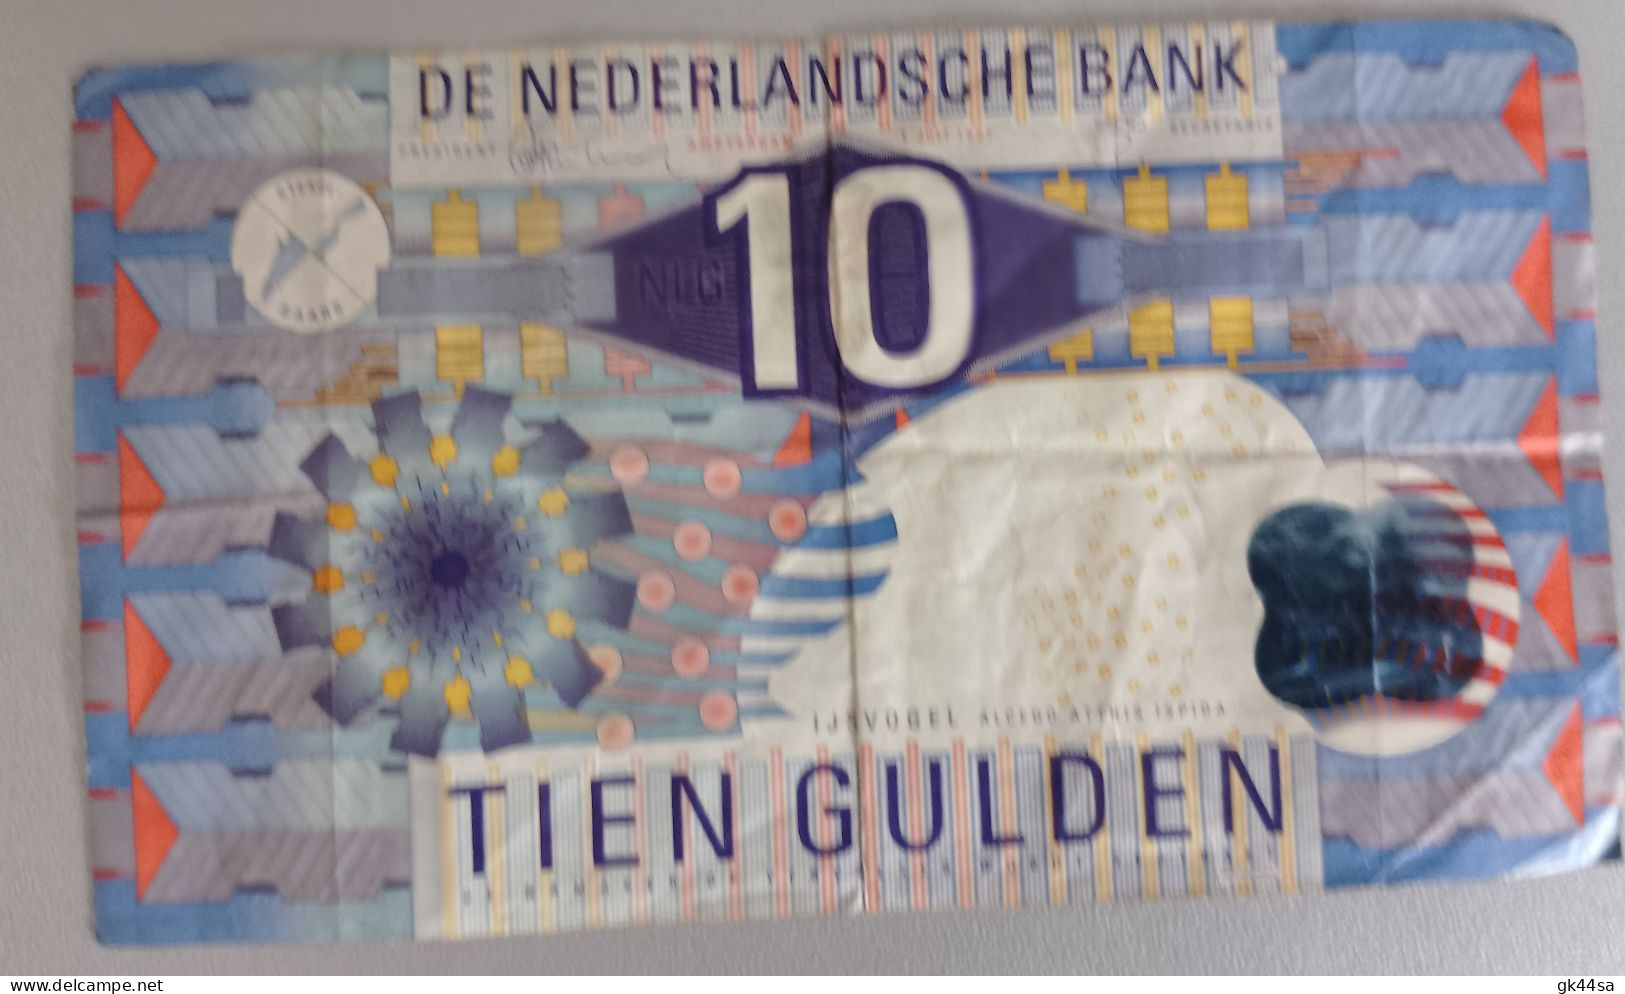 10 TIEN GULDEN - DE NEDERLANDSCHE BANK - AMSTERDAM 1997 - A Identifier